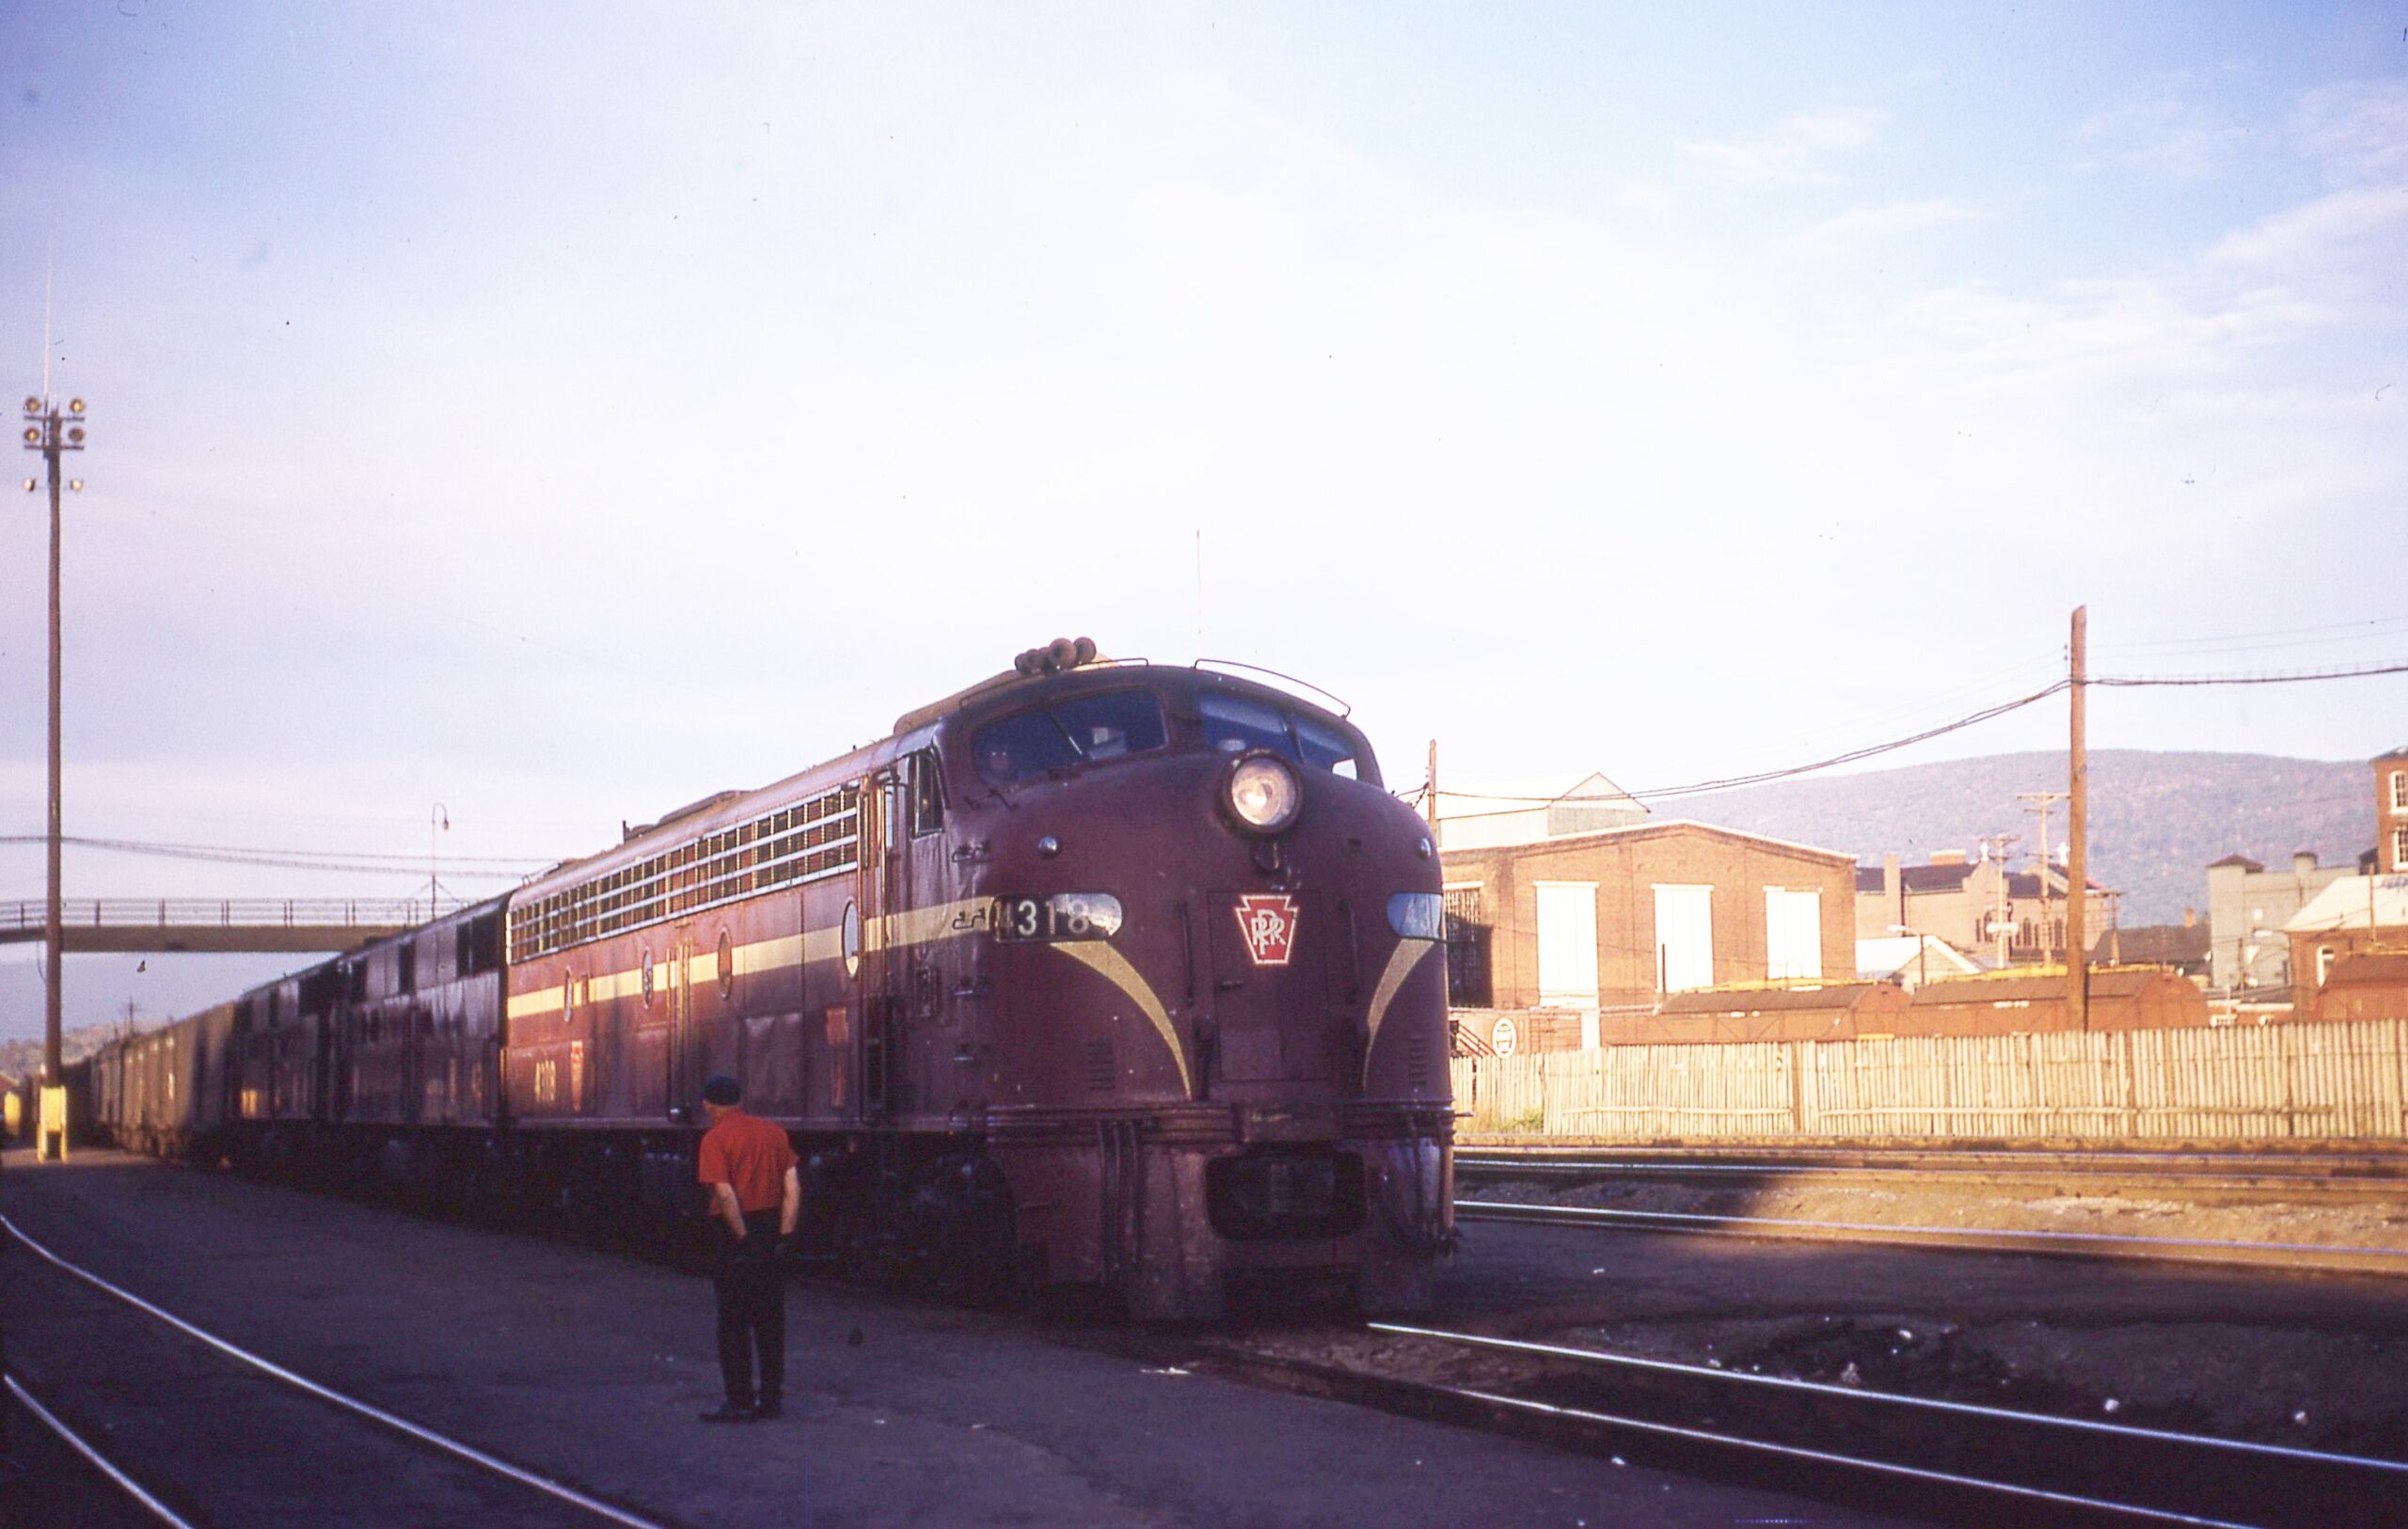 Pennsylvania Railroad | Altoona, Pennsylvania | EMD E8a #4318 diesel-electric locomotive | September 1967 | Calvin T. Banse photograph